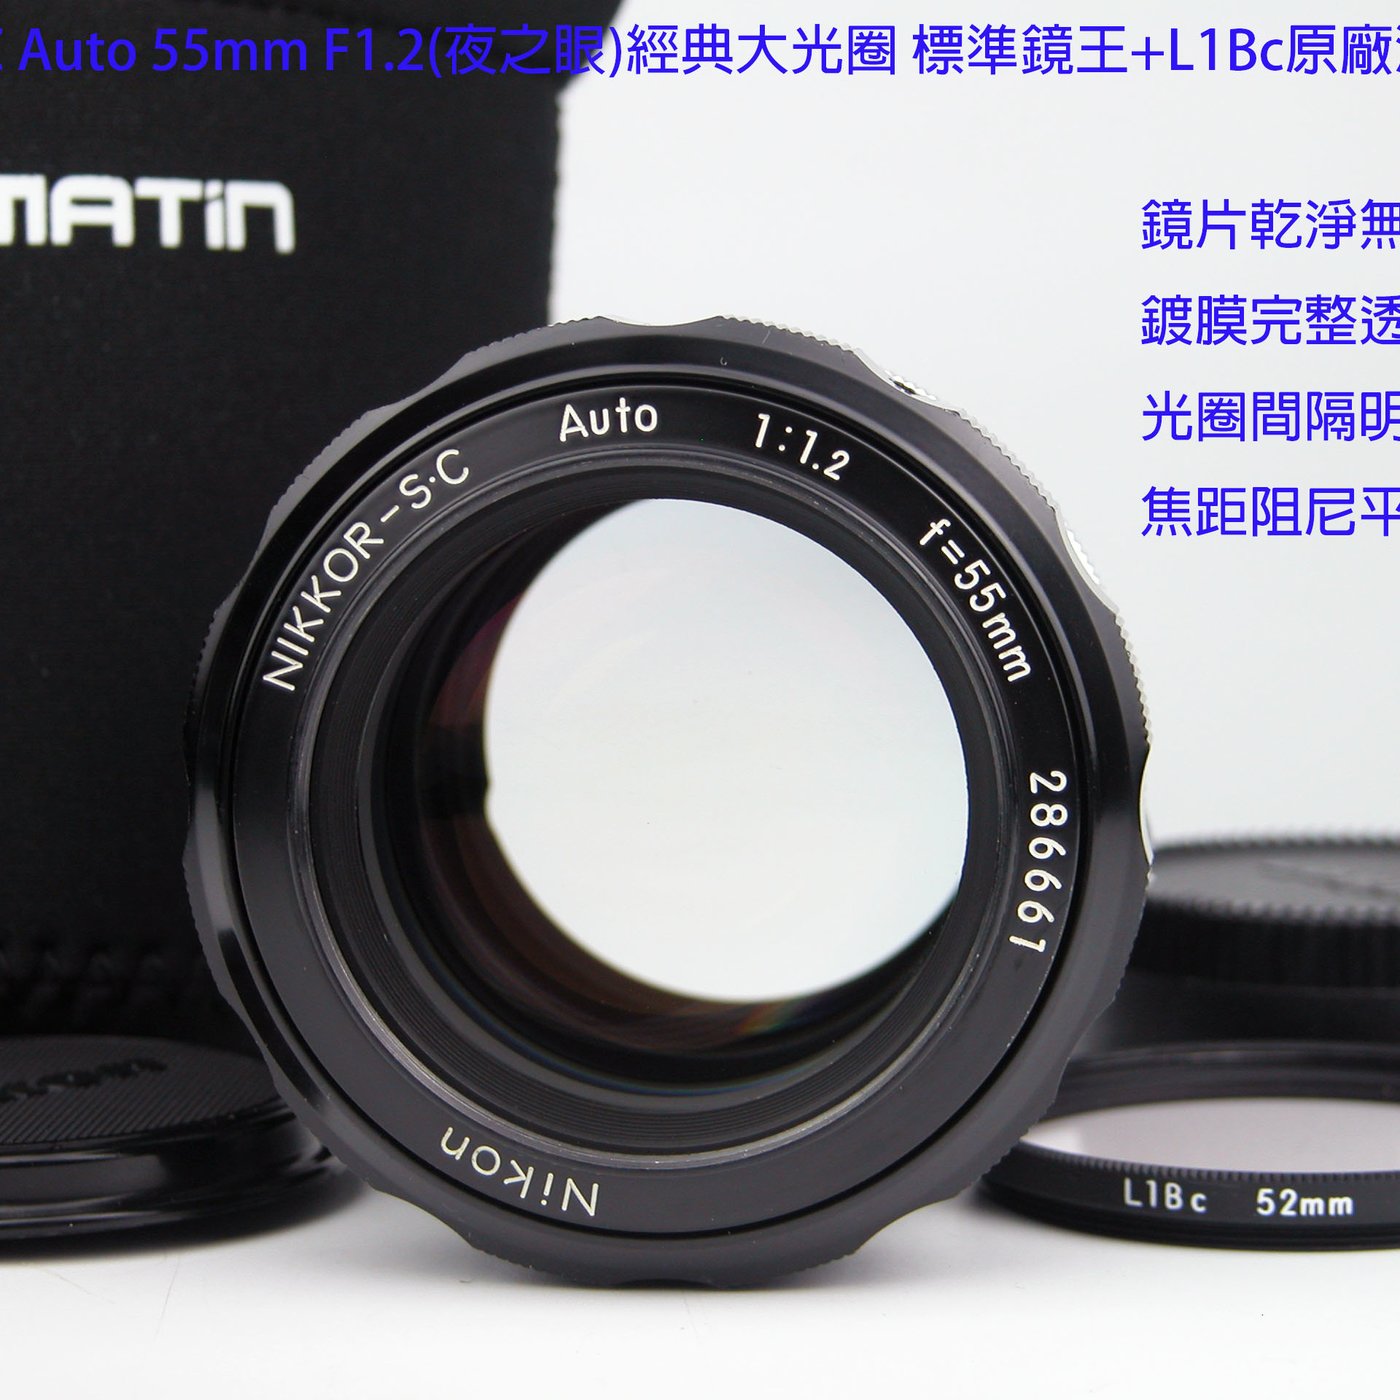 【魅惑の大口径】Nikon NIKKOR-S・C Auto 55mm F1.2